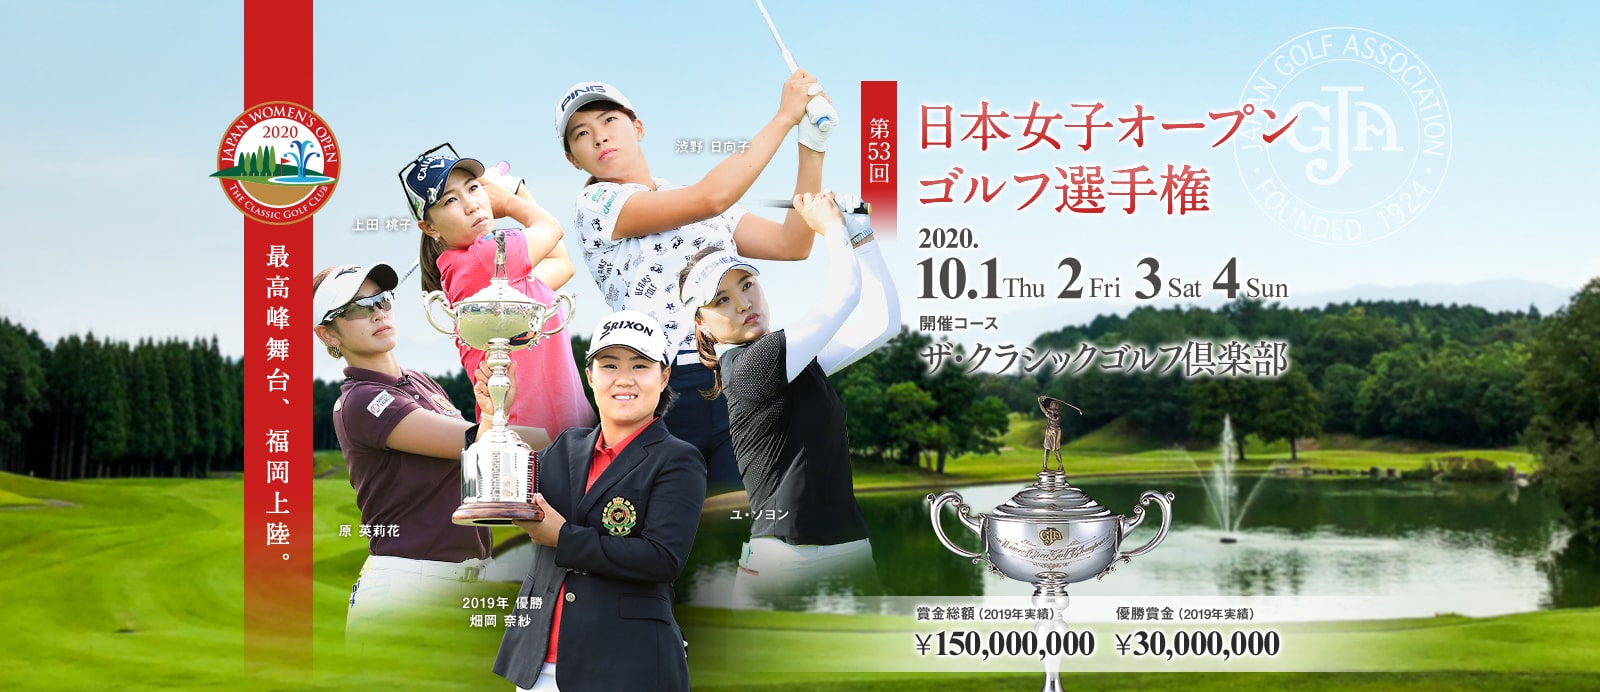 日本女子オープンゴルフ選手権チケット2枚